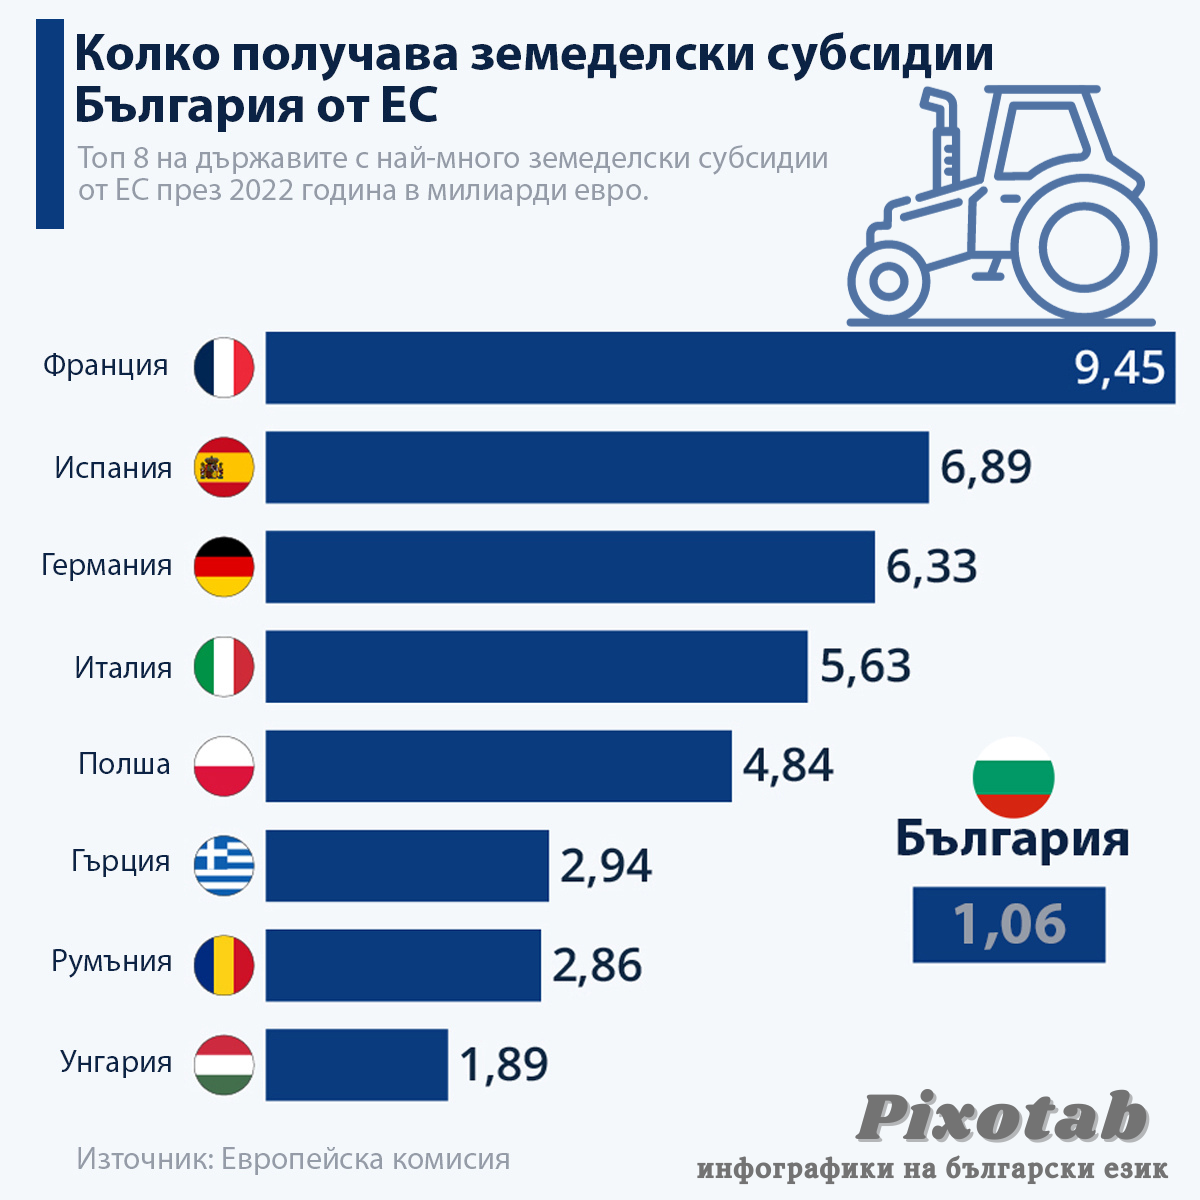 Колко получава земеделски субсидии България от ЕС